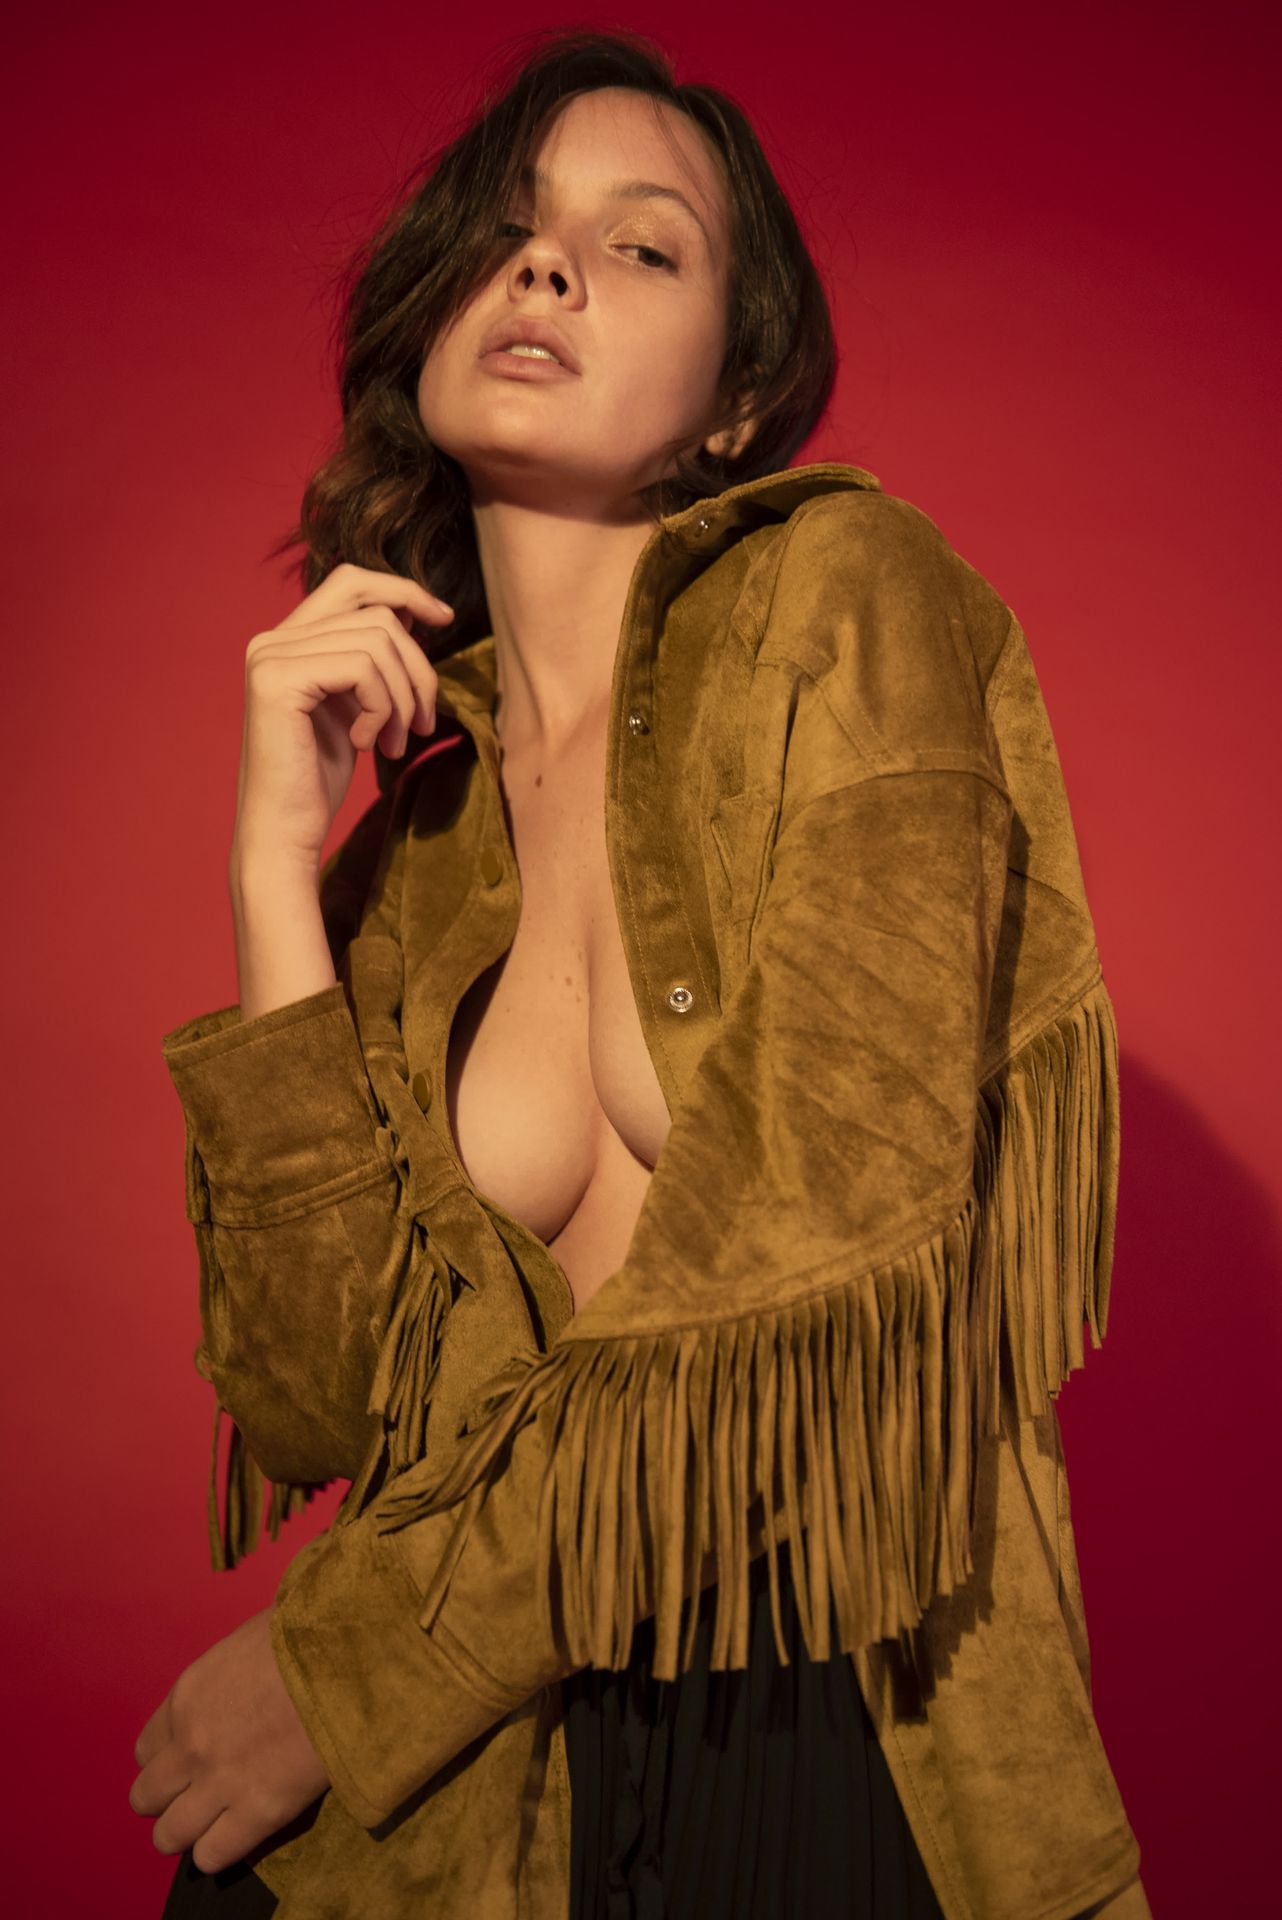 Yuliana Peixoto Nude & Sexy (15 Photos)